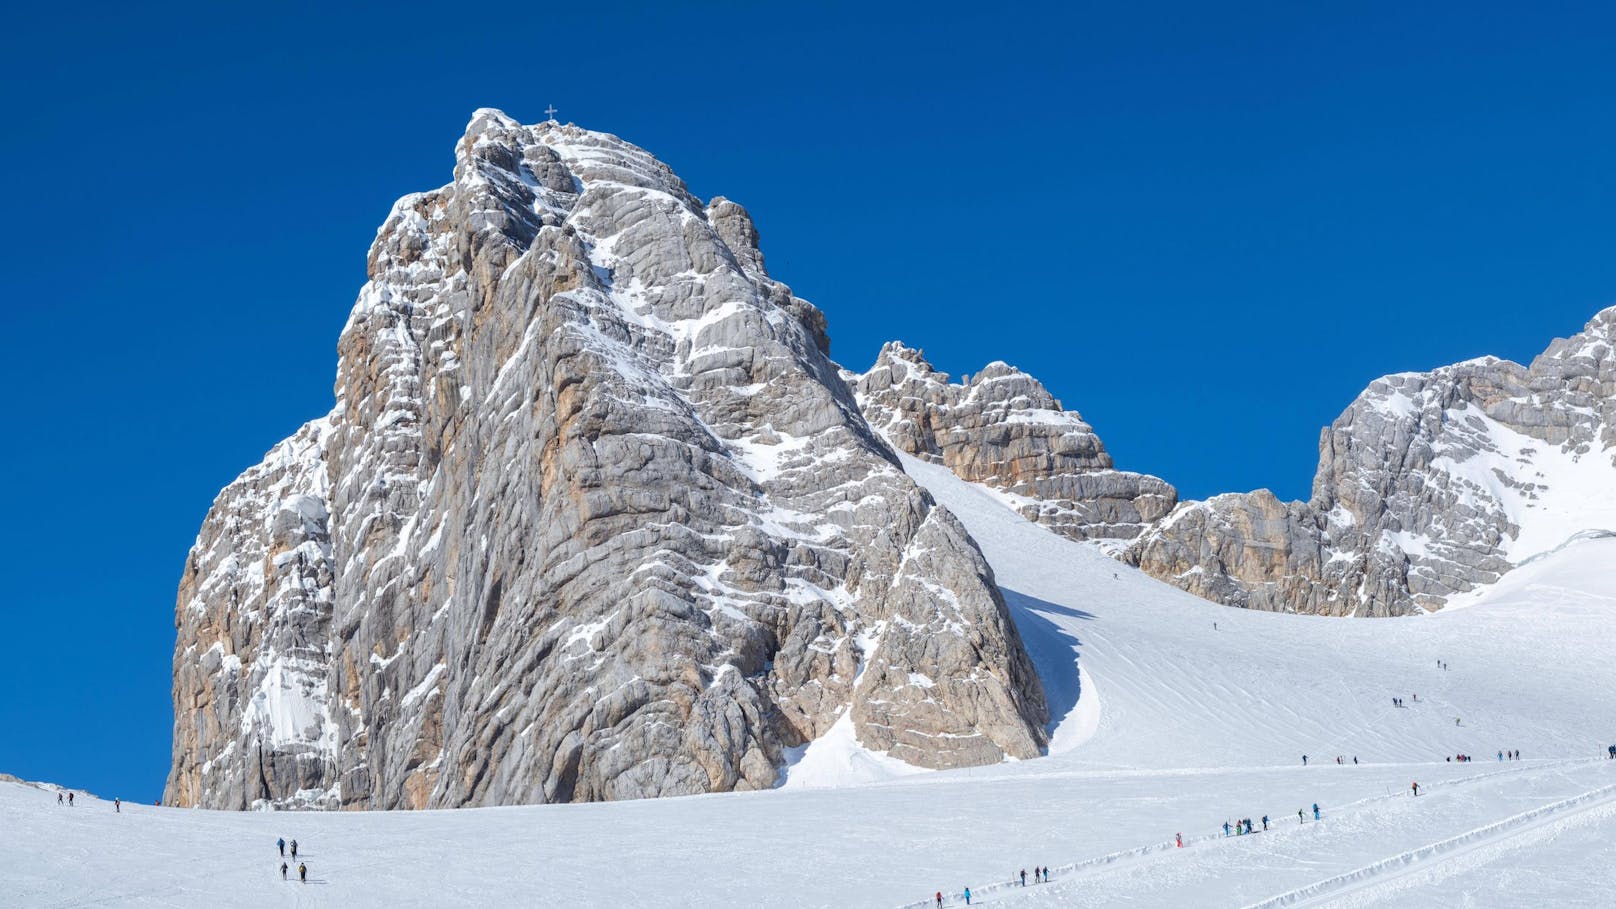 Skitourengeher auf dem Weg zum Hohen Dachstein mit Gipfelkreuz. Der Dachstein ist der höchste Berg der Steiermark.